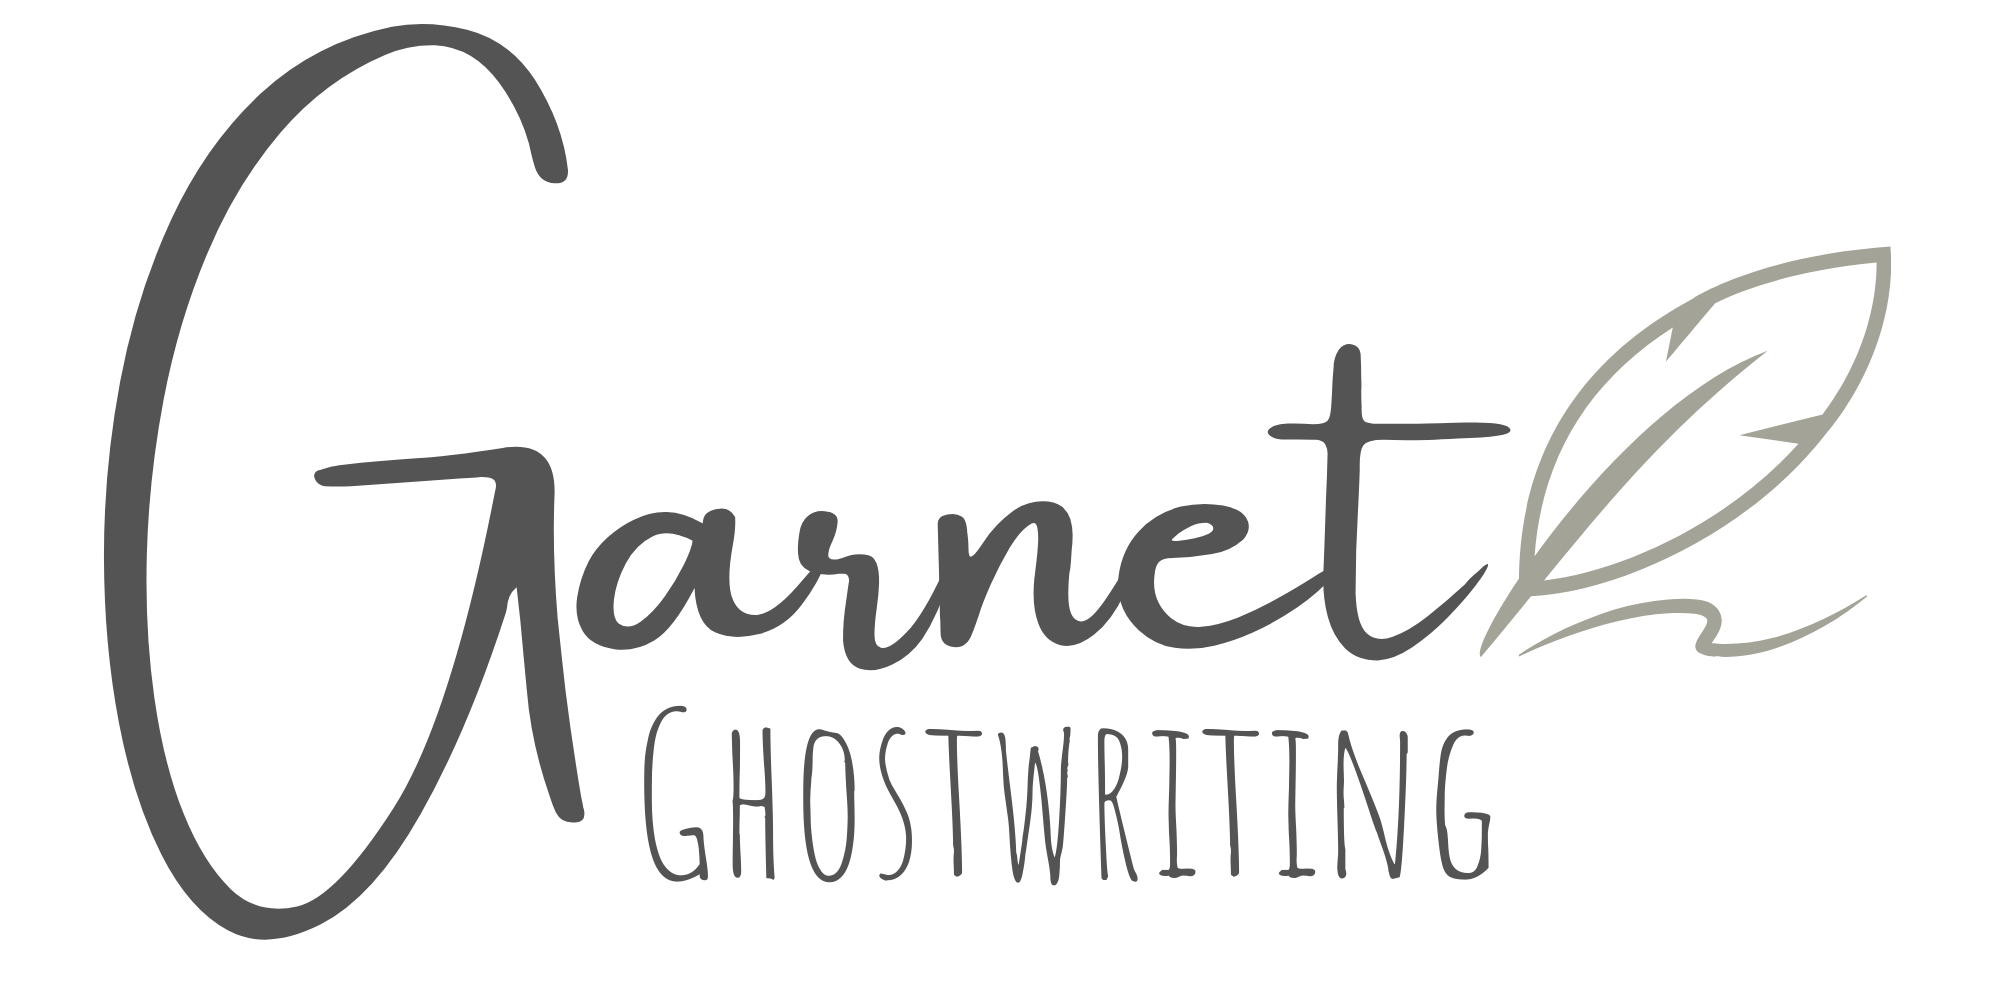 Garnet Ghostwriting